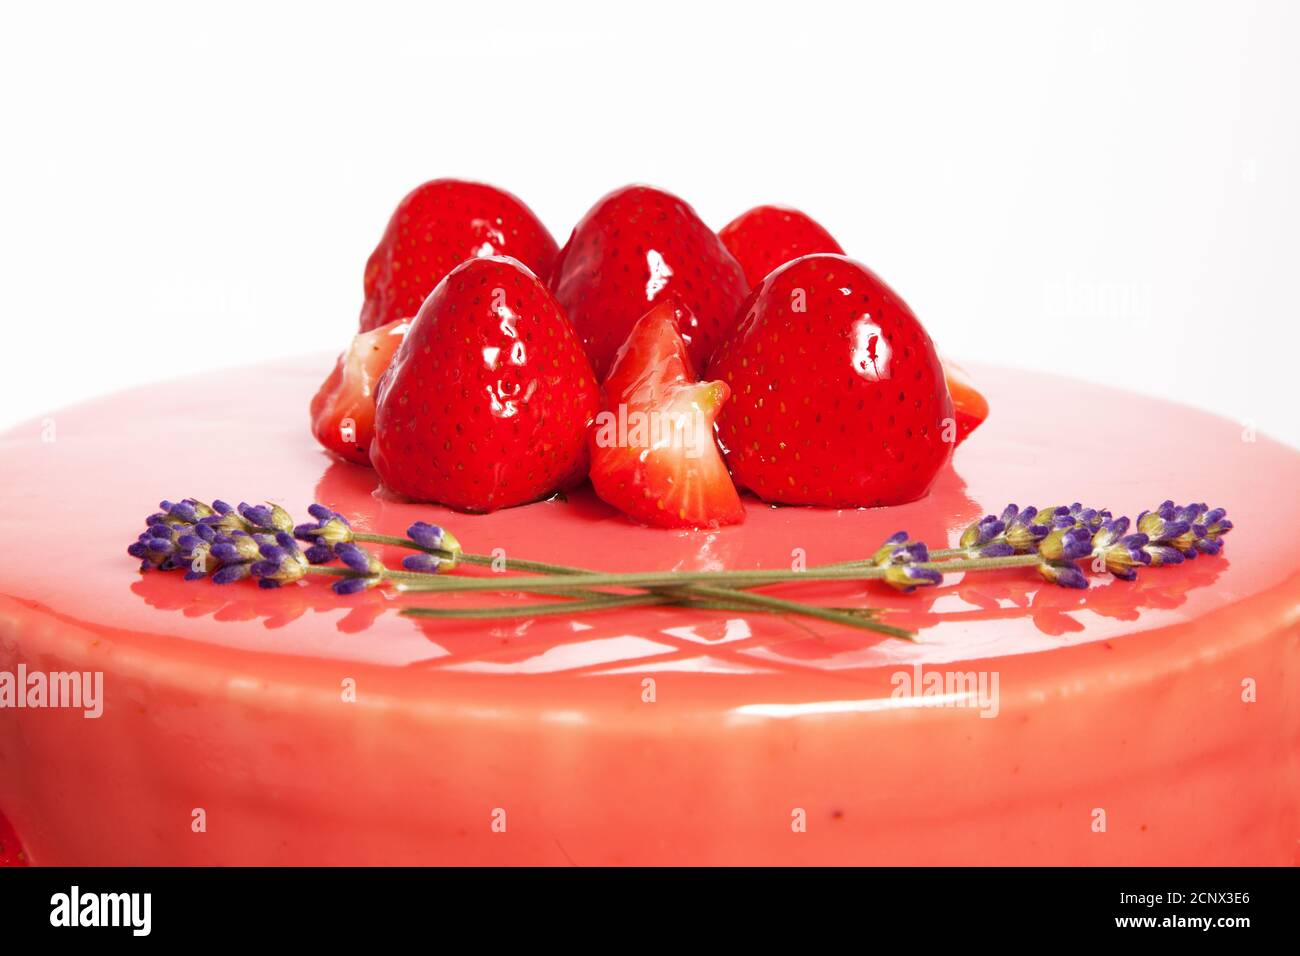 gâteau entremet à la fraise fait maison Foto Stock